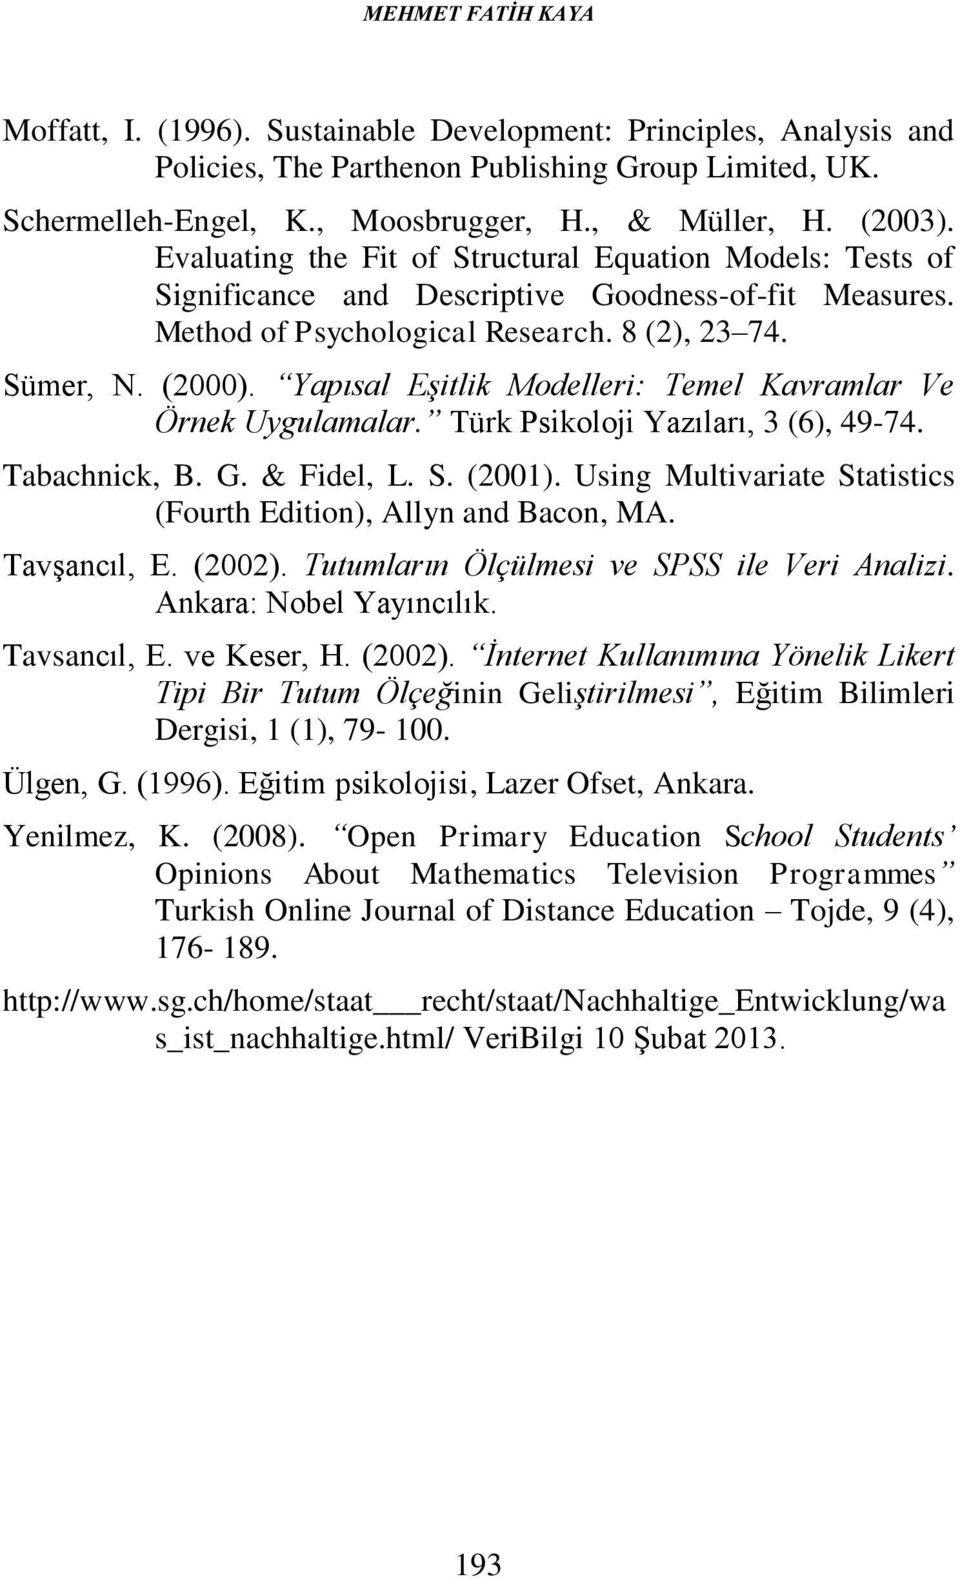 Yapısal Eşitlik Modelleri: Temel Kavramlar Ve Örnek Uygulamalar. Türk Psikoloji Yazıları, 3 (6), 49-74. Tabachnick, B. G. & Fidel, L. S. (2001).